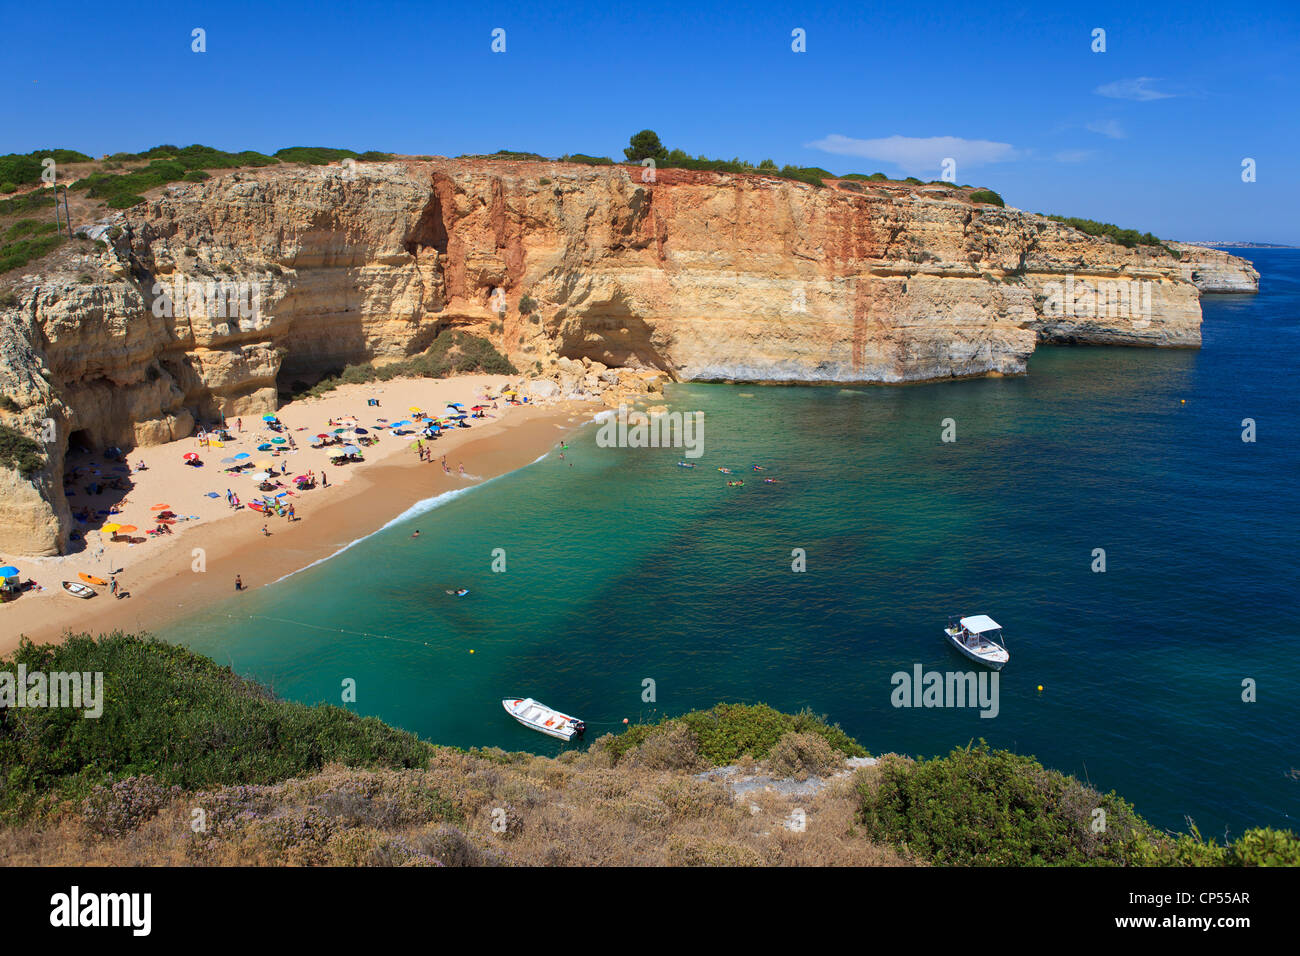 Praia do Benagil, Algarve, Portugal Stock Photo